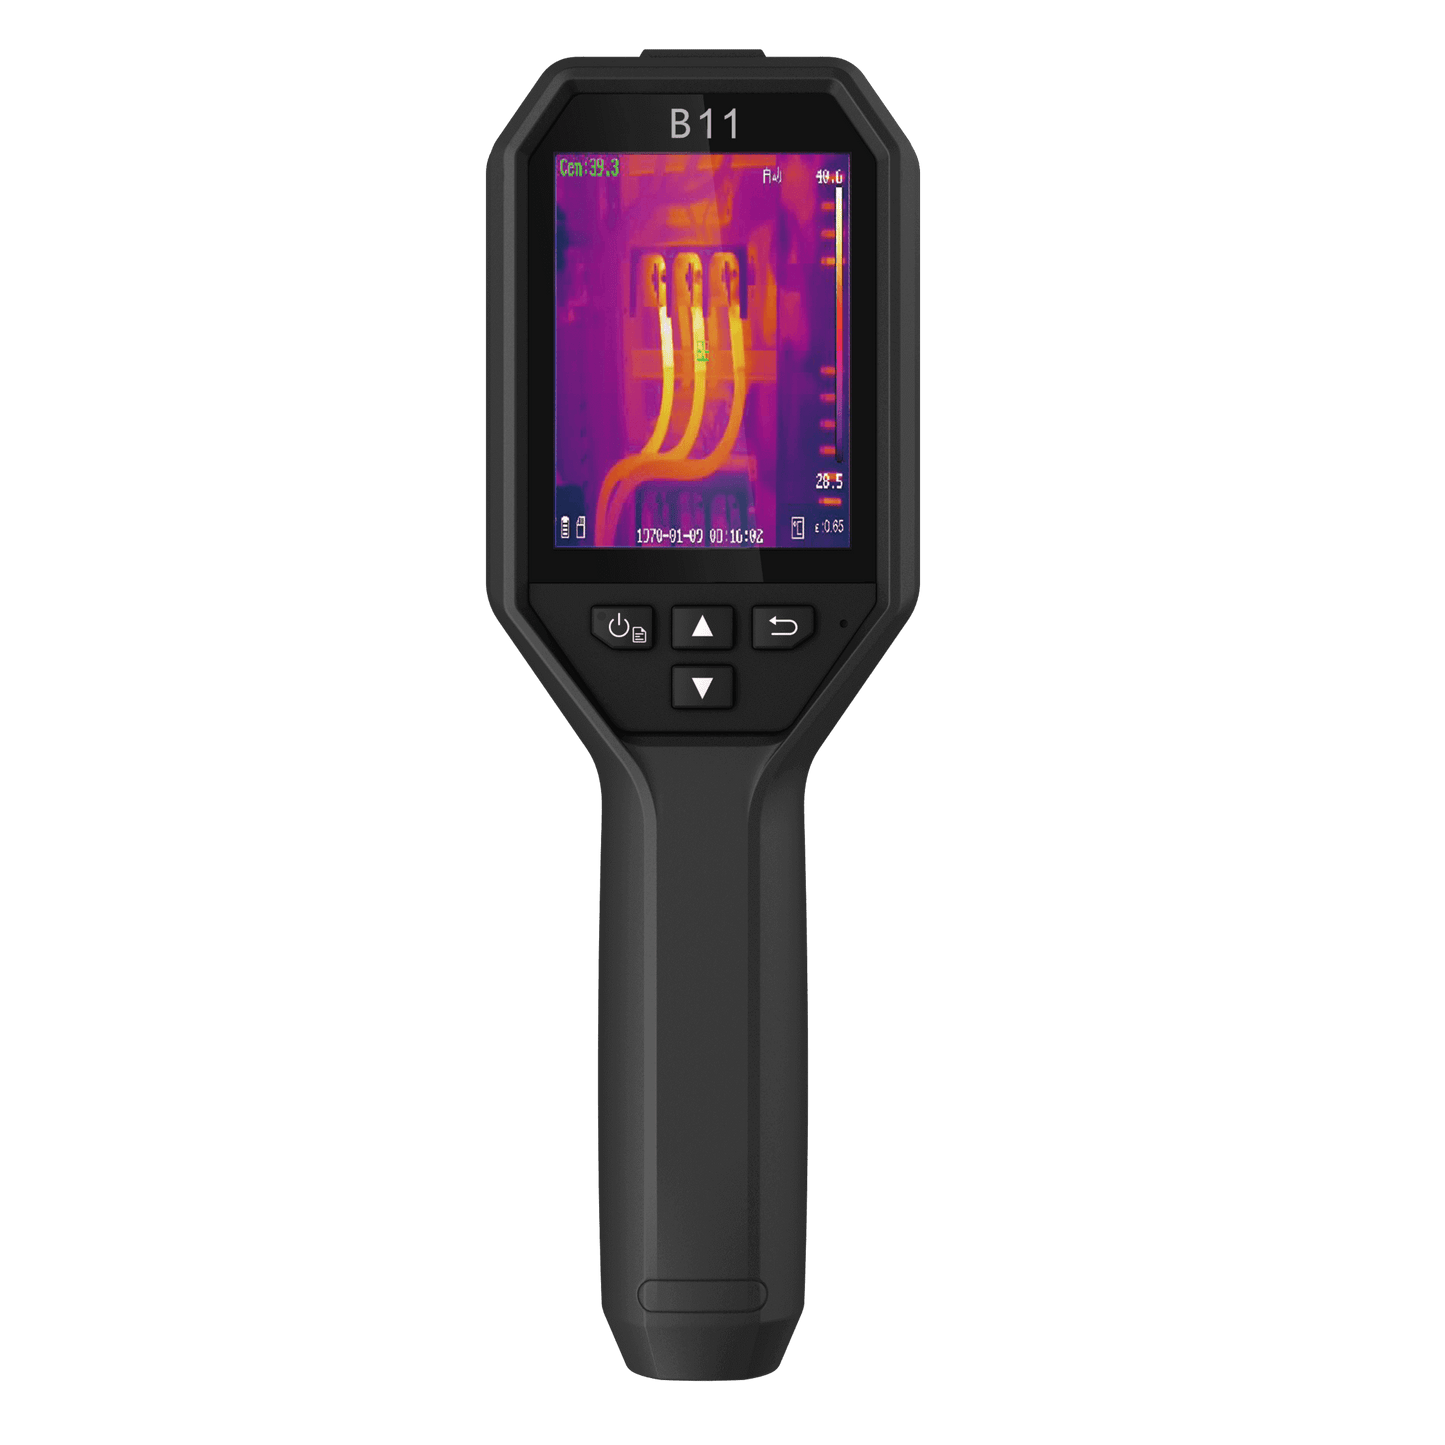 HikMicro B11 Bi-Spectrum Handheld Thermal Imager Rear Screen View